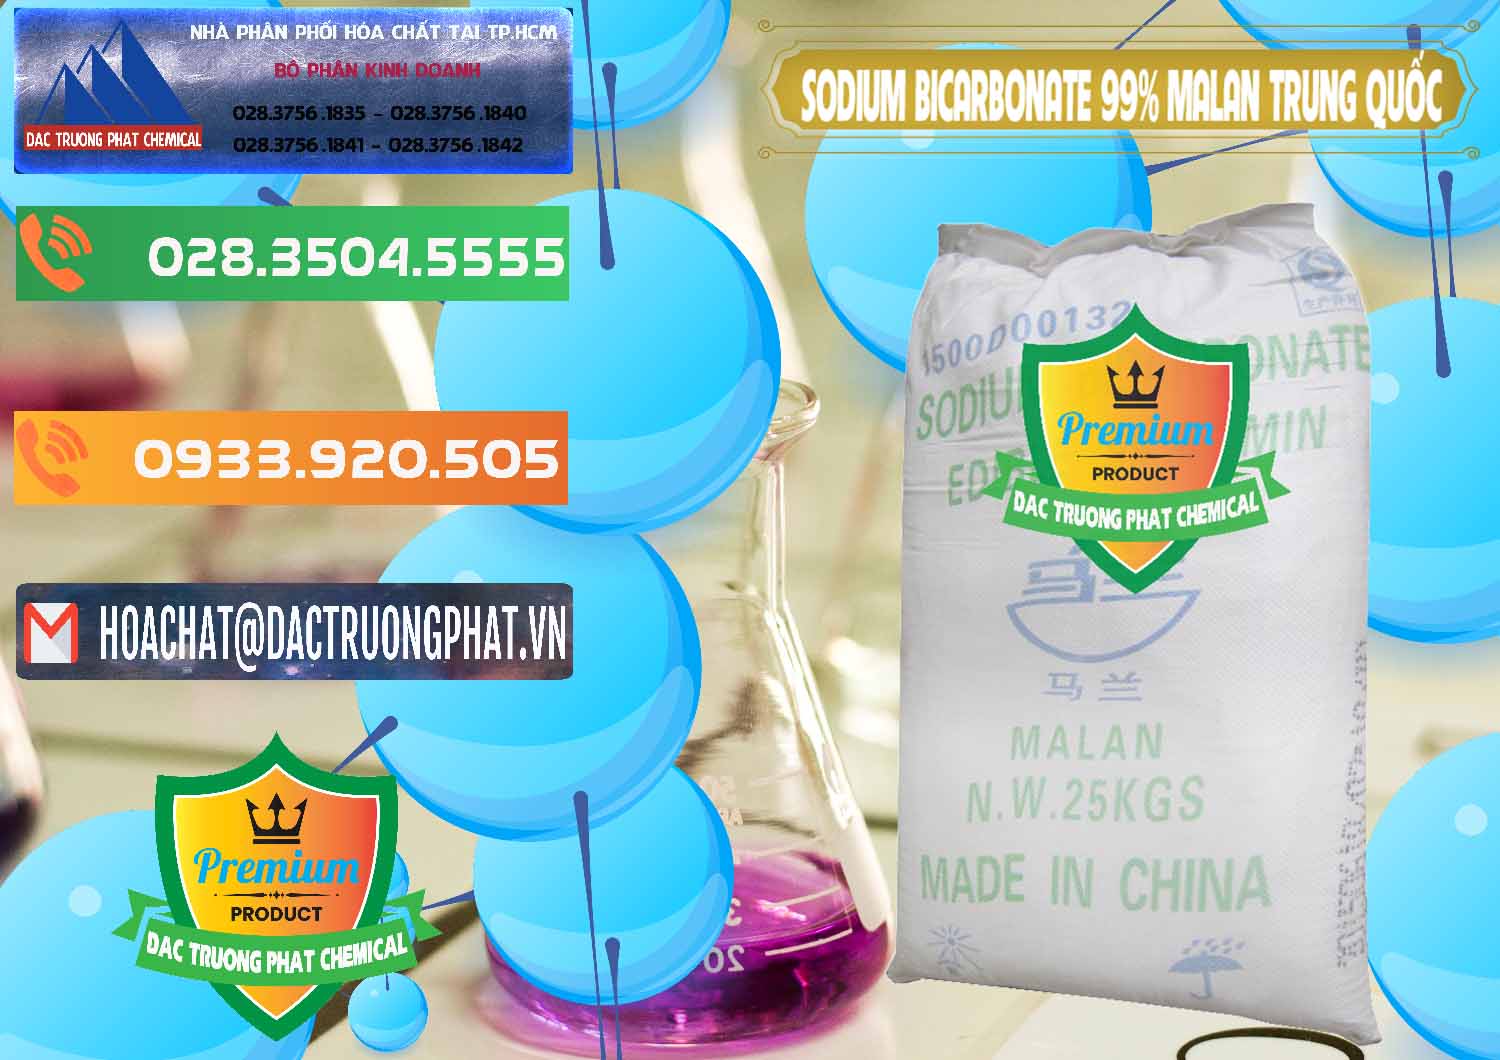 Cty chuyên cung cấp ( bán ) Sodium Bicarbonate – Bicar NaHCO3 Malan Trung Quốc China - 0218 - Công ty cung ứng - phân phối hóa chất tại TP.HCM - hoachatxulynuoc.com.vn